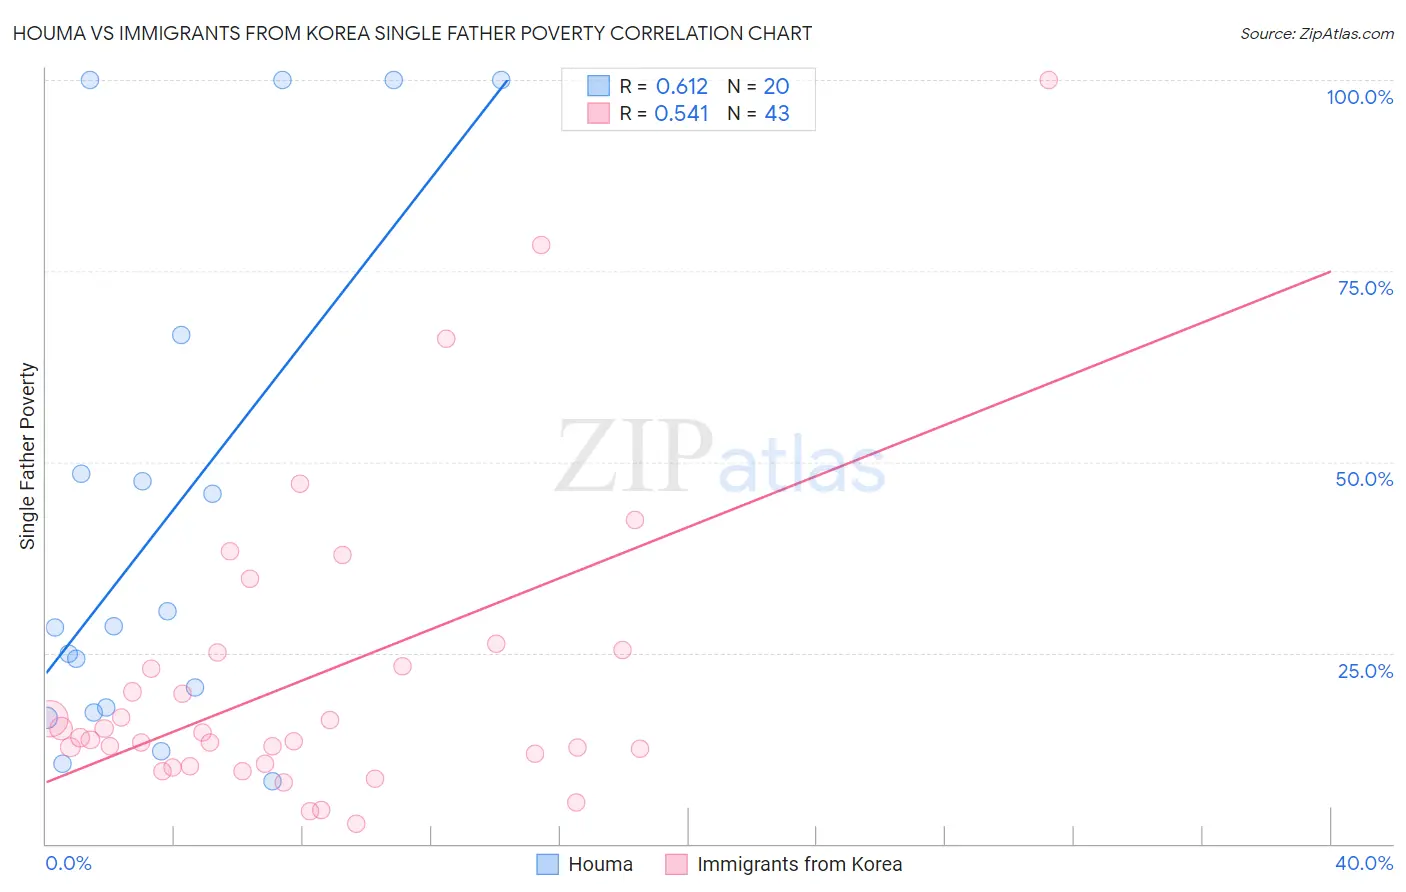 Houma vs Immigrants from Korea Single Father Poverty